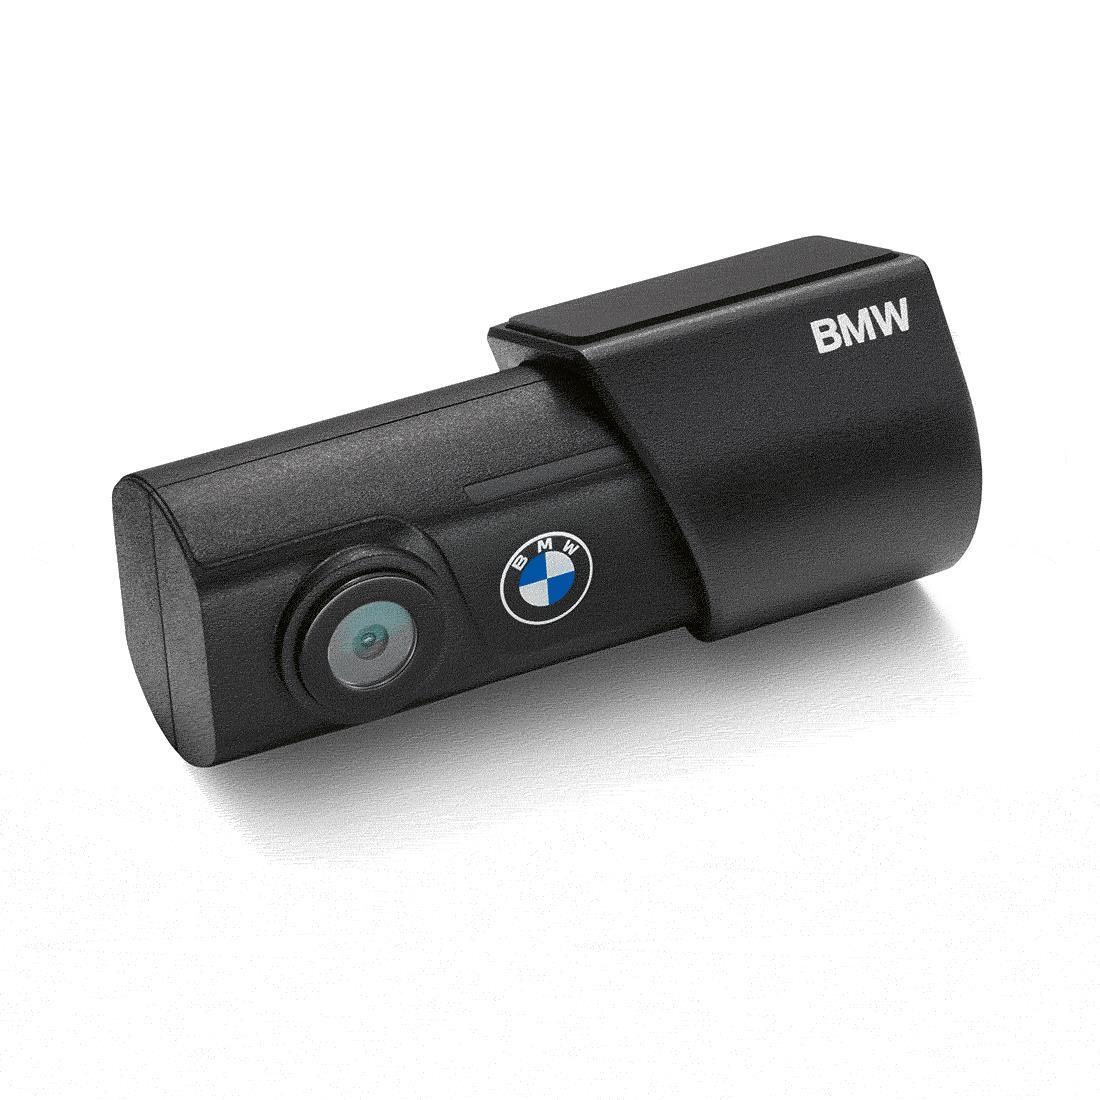 BMW Advanced Car Eye 3.0 with display